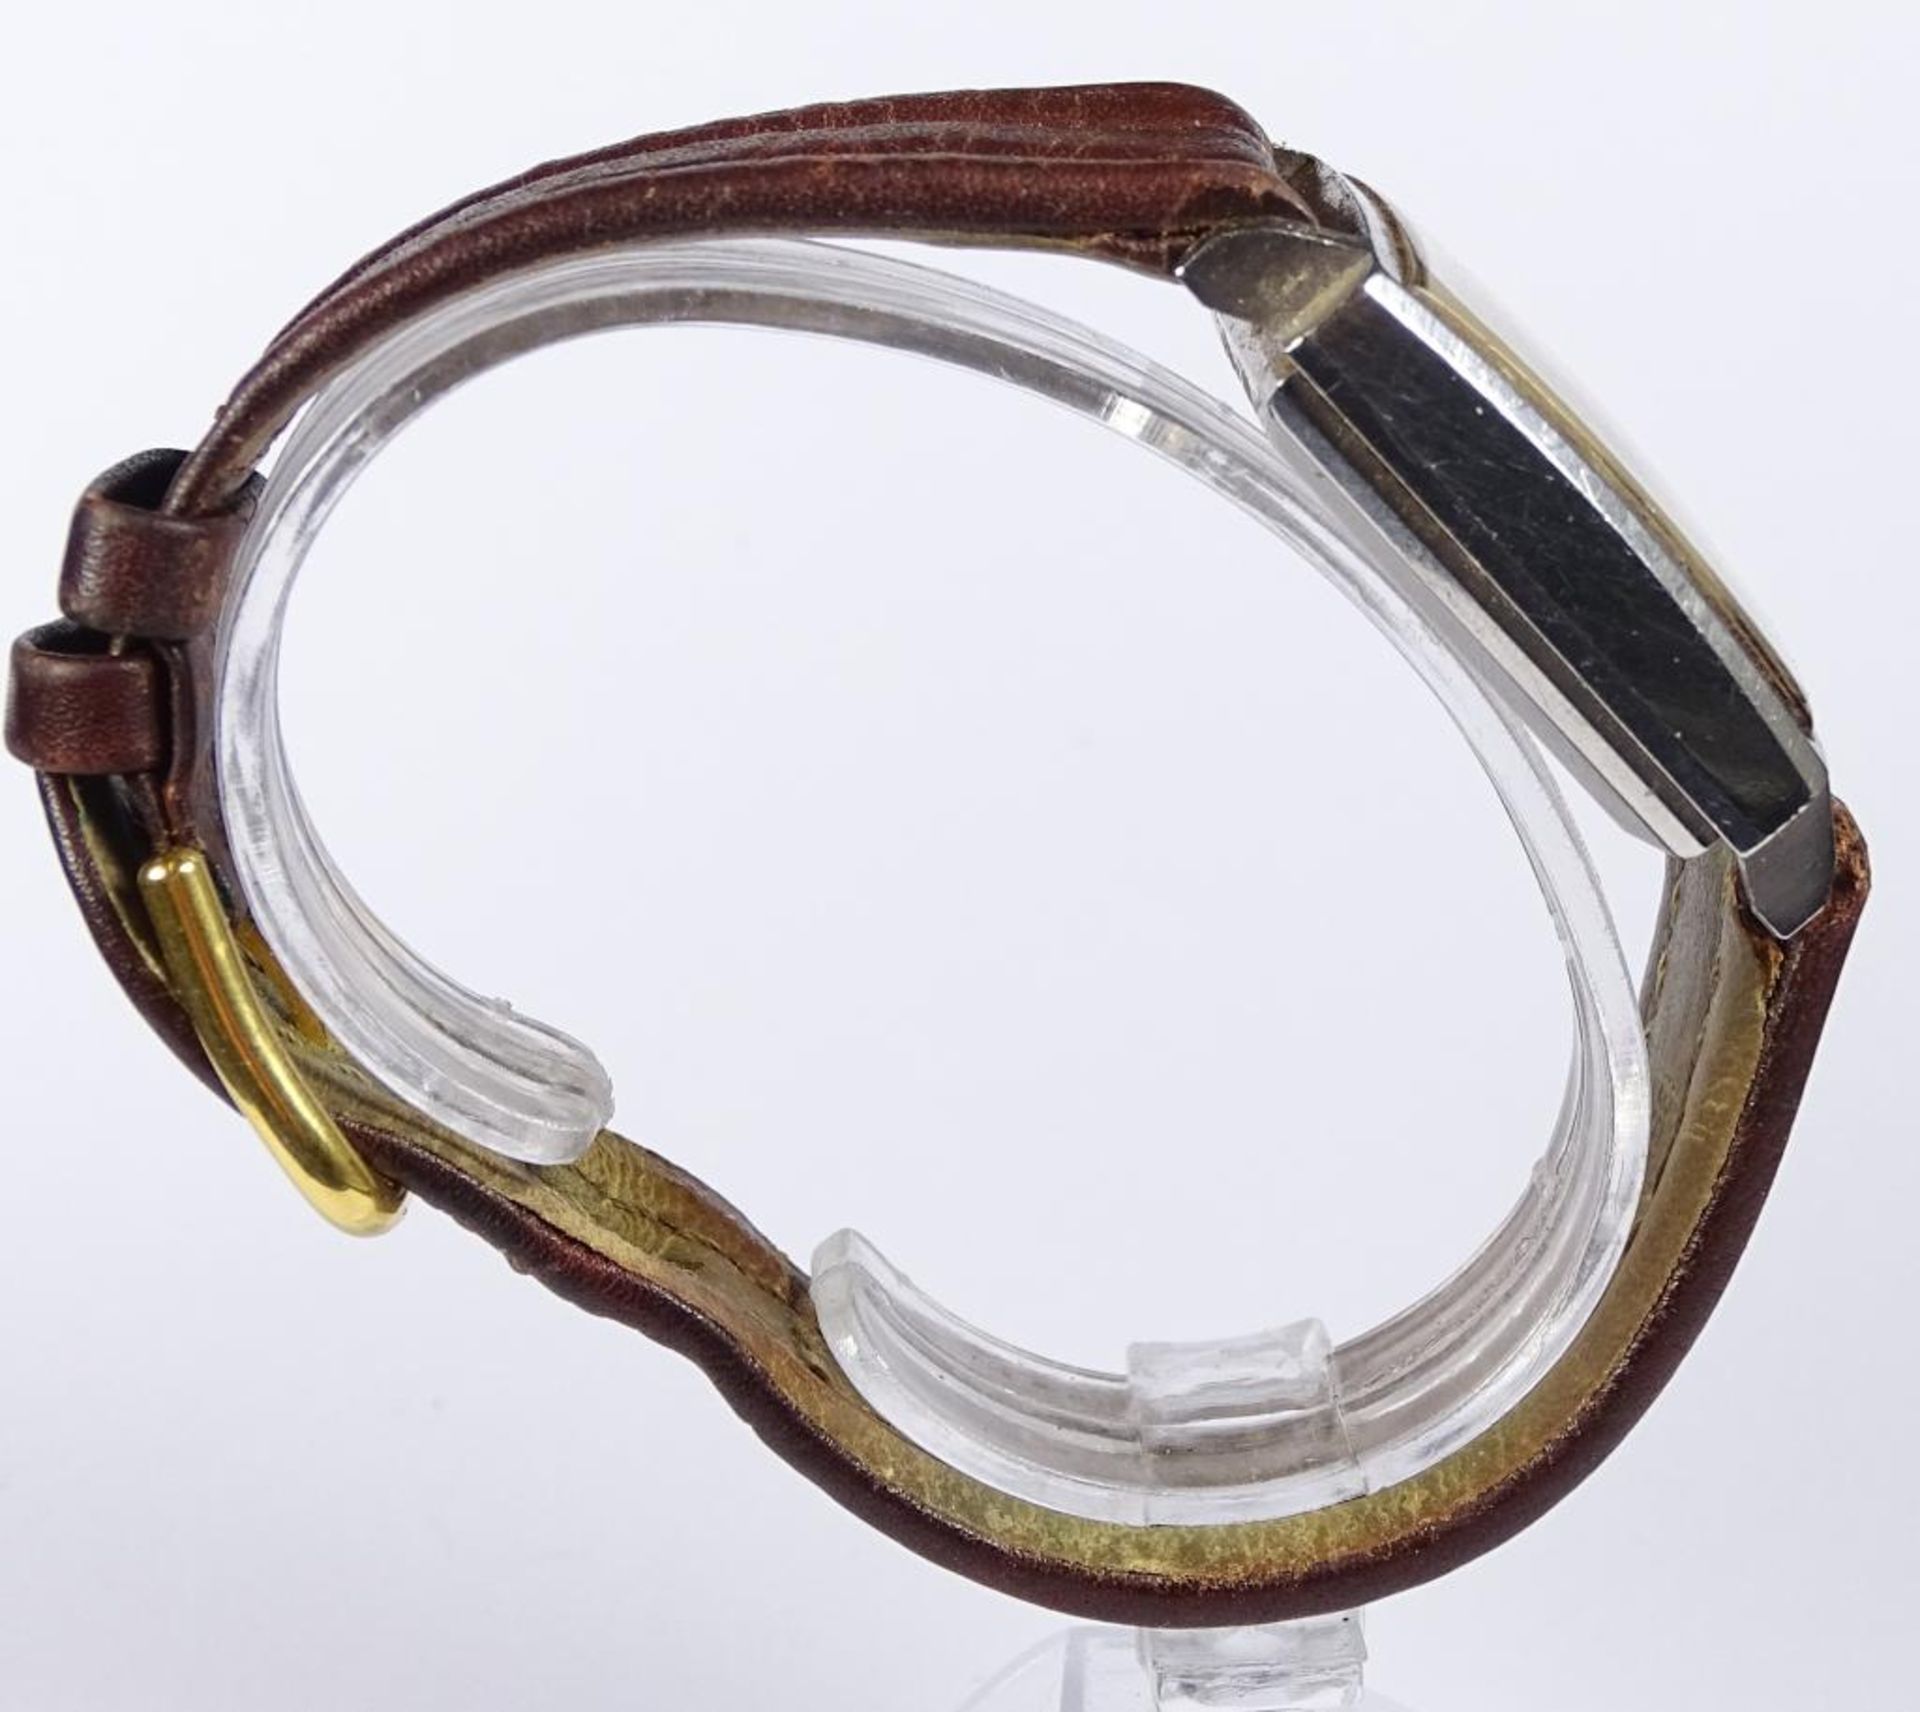 Herren Armbanduhr "Zenith",1960er Jahre,automatik Werk,dieses läuft,Datumsanzeige zwischen 4/5 Uhr, - Bild 4 aus 6